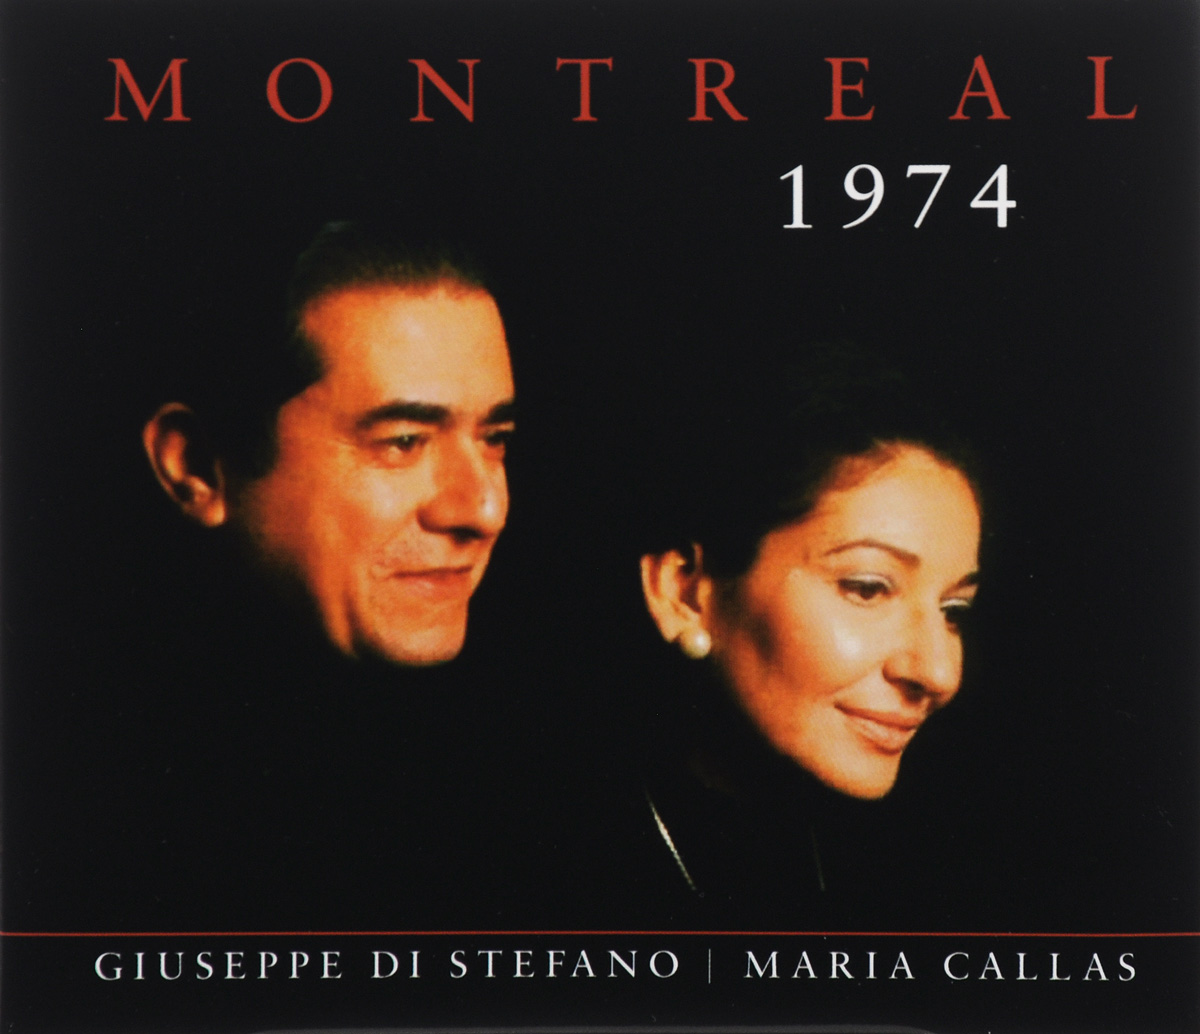 Maria Callas. Giuseppe Di Stefano. Montreal 1974